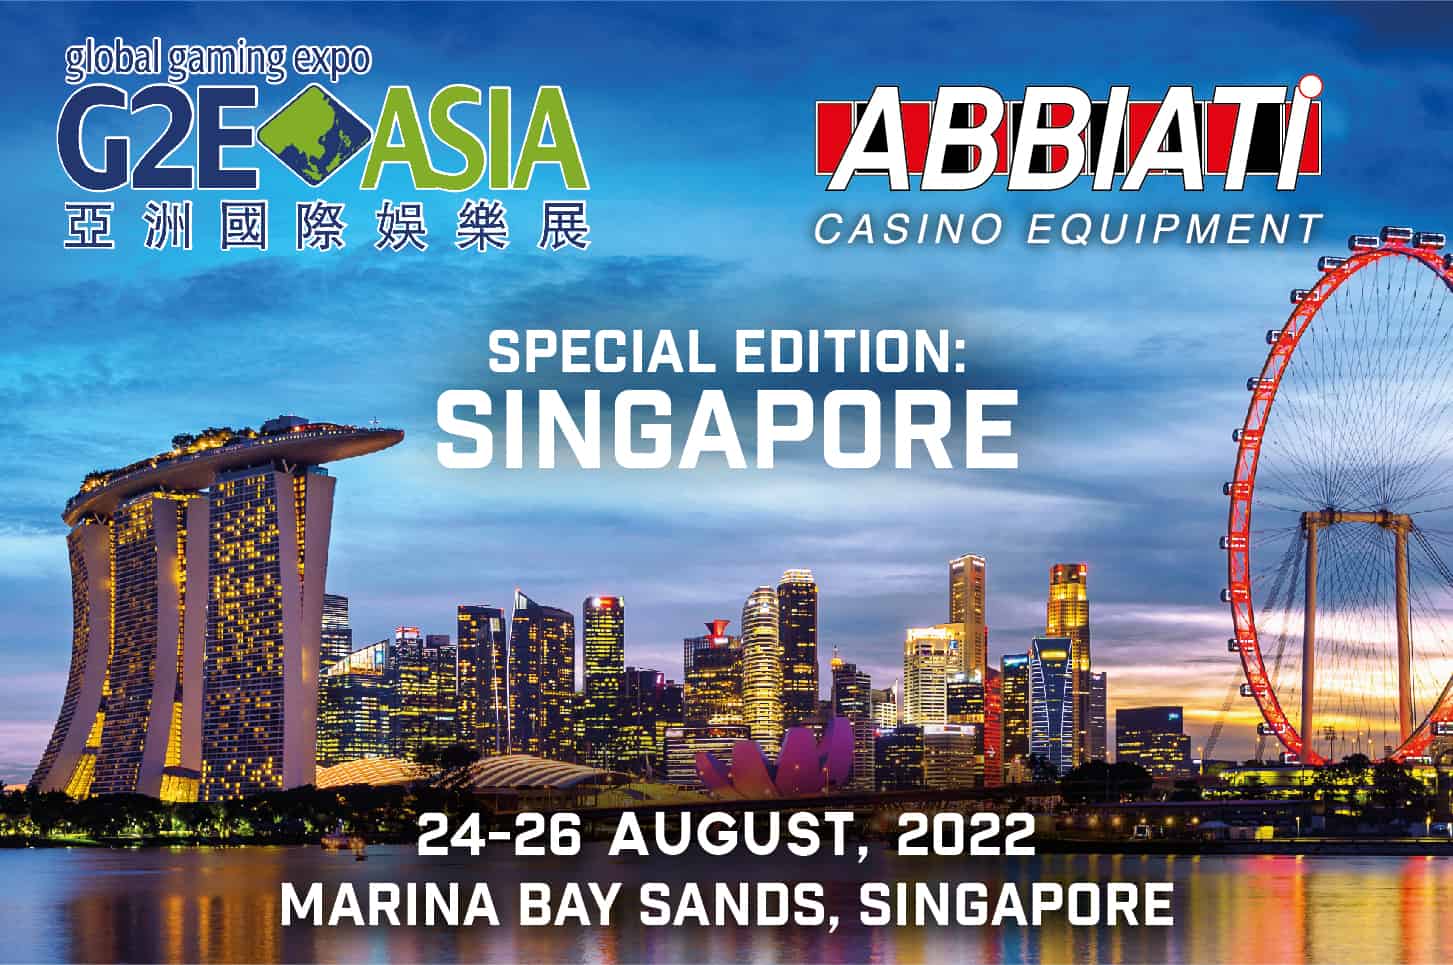 G2E ASIA Special Edition SINGAPORE ABBIATI CASINO EQUIPMENT